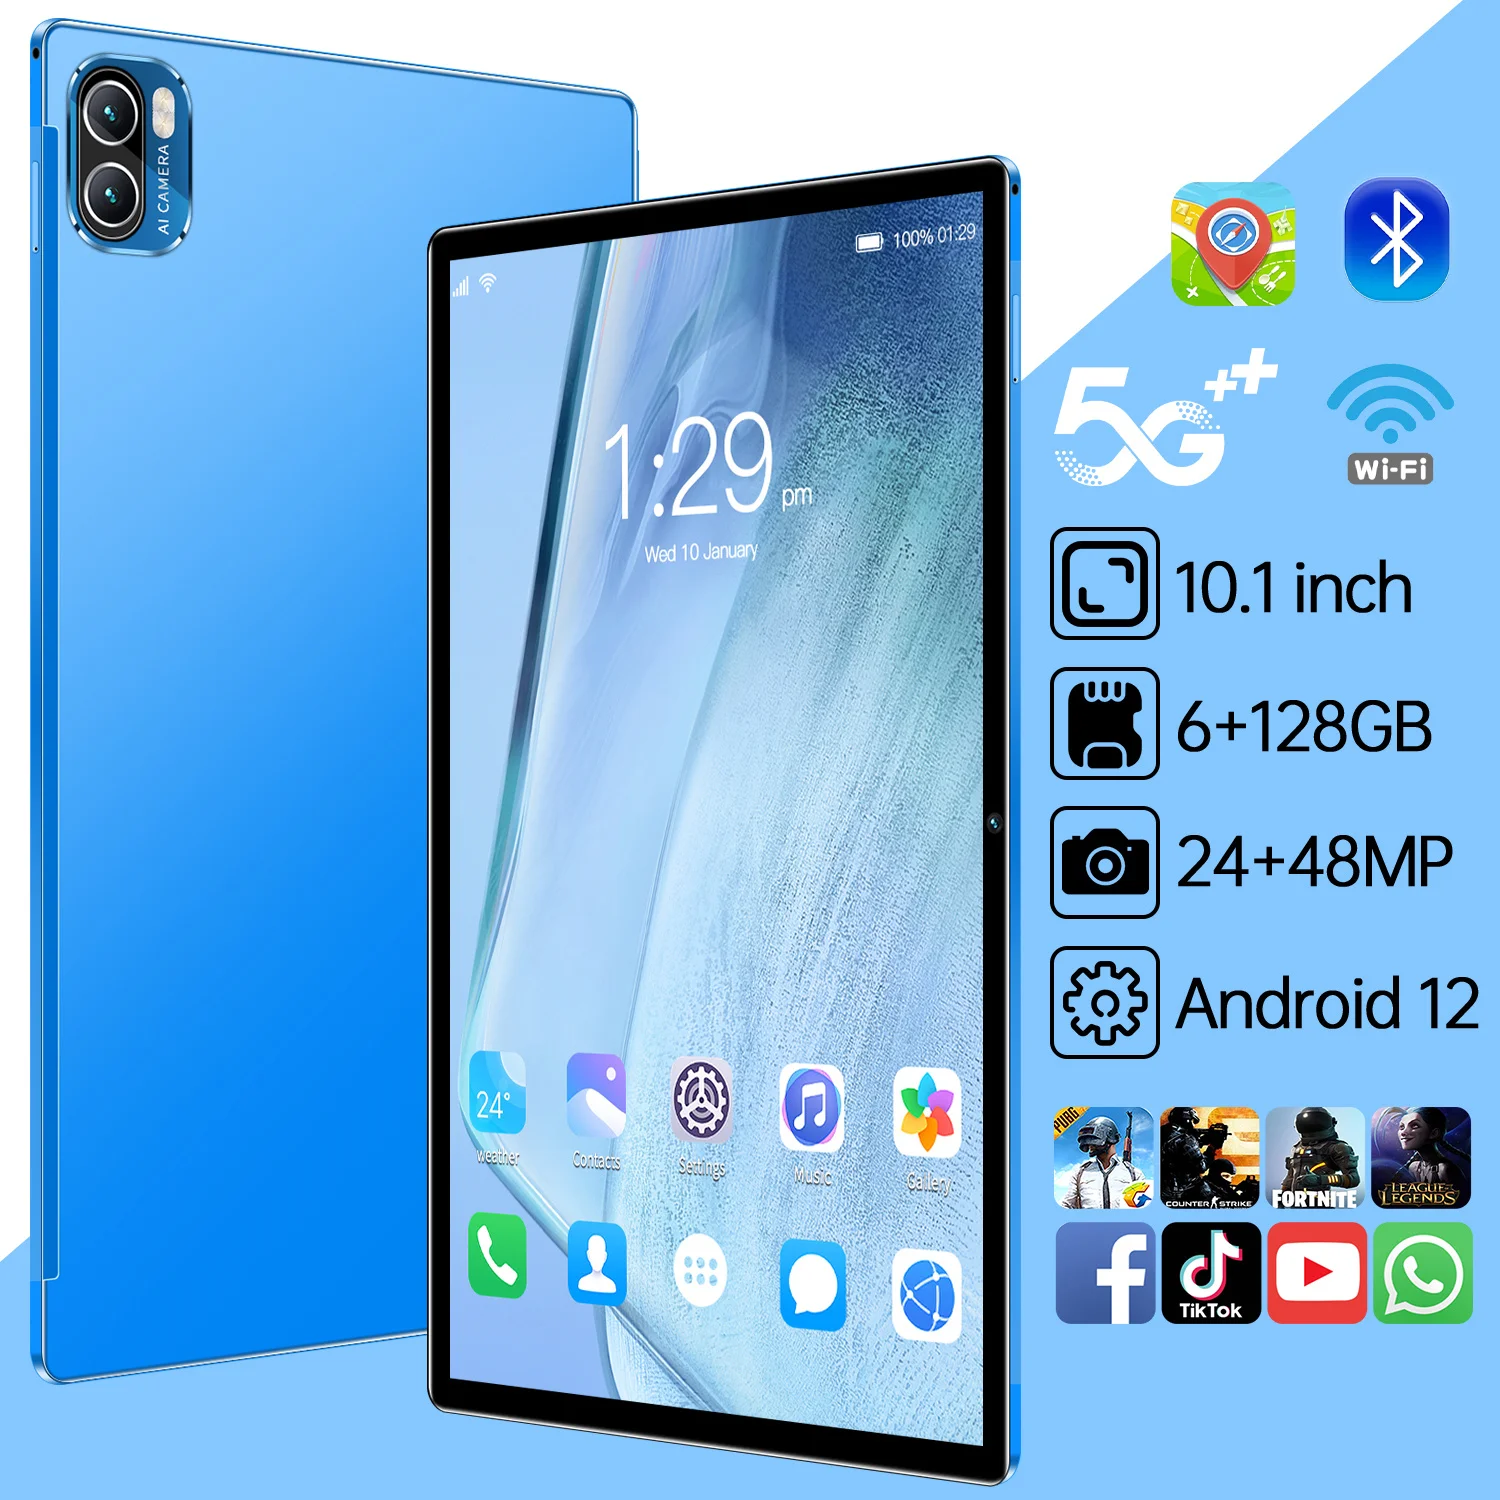 

Планшет Classic Pro на Android 12, восемь ядер, экран 10,1 дюйма, 6 ГБ + 128 ГБ